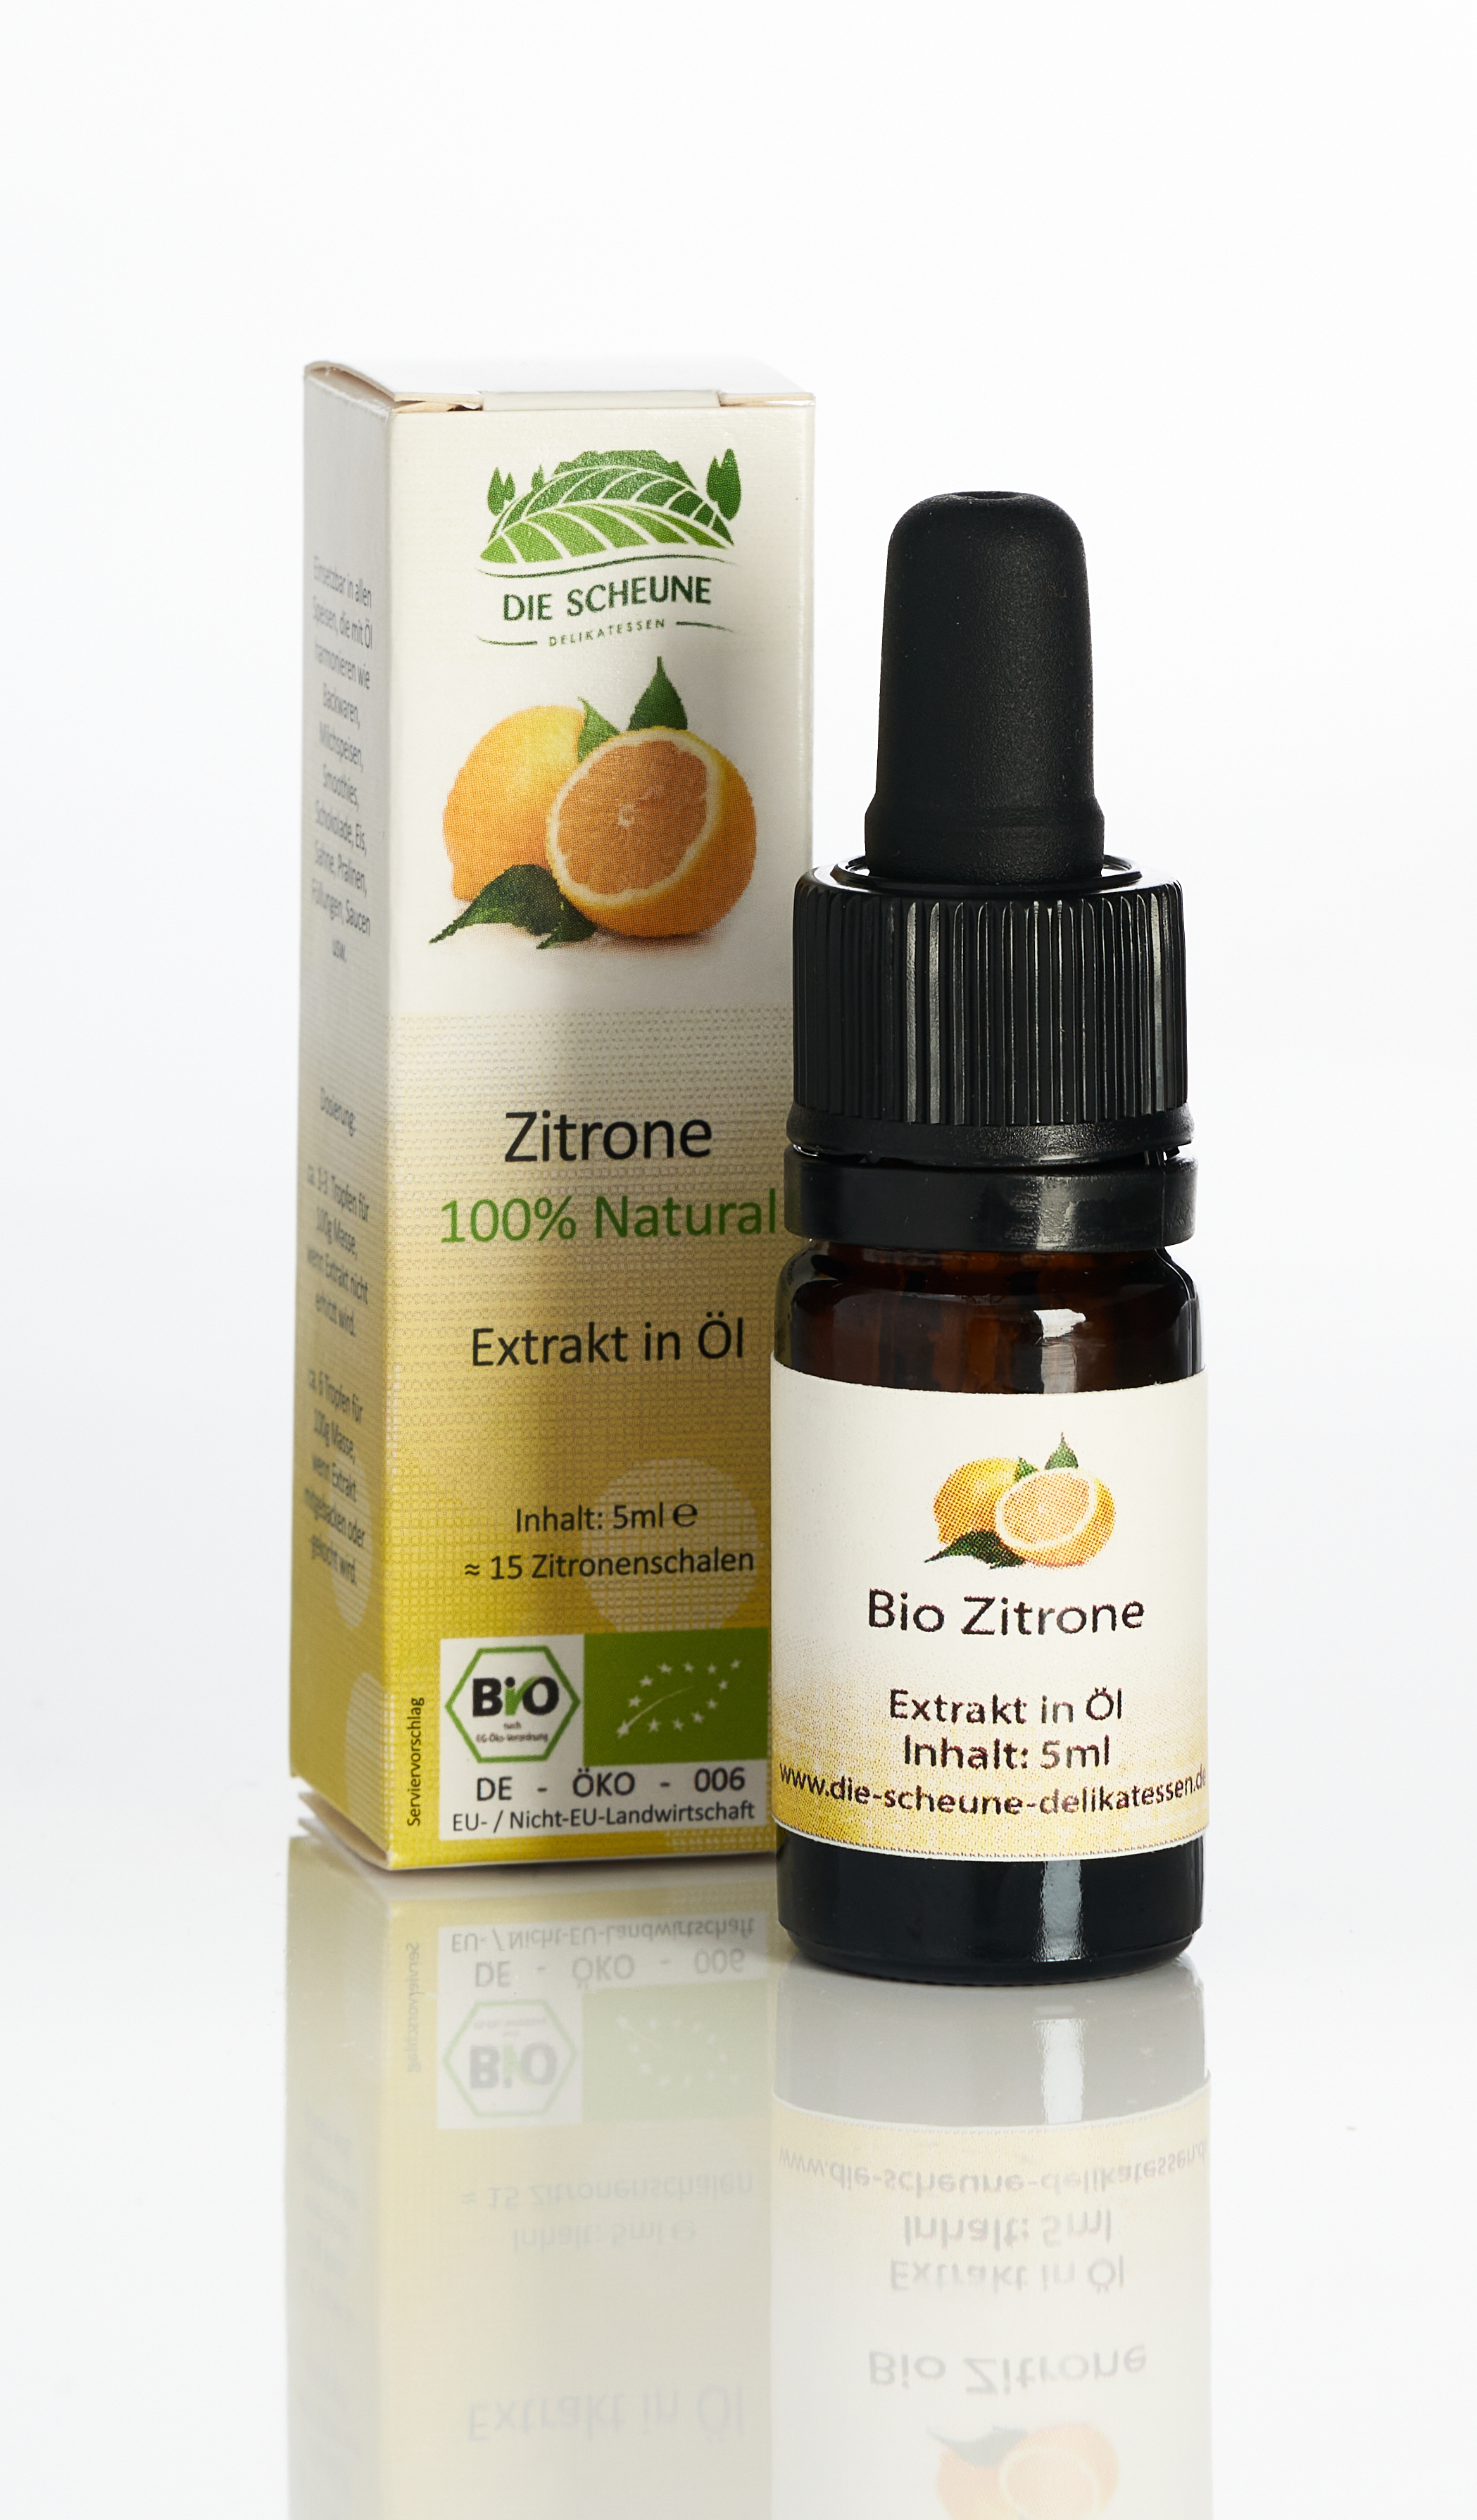 Bio Zitronen Aroma